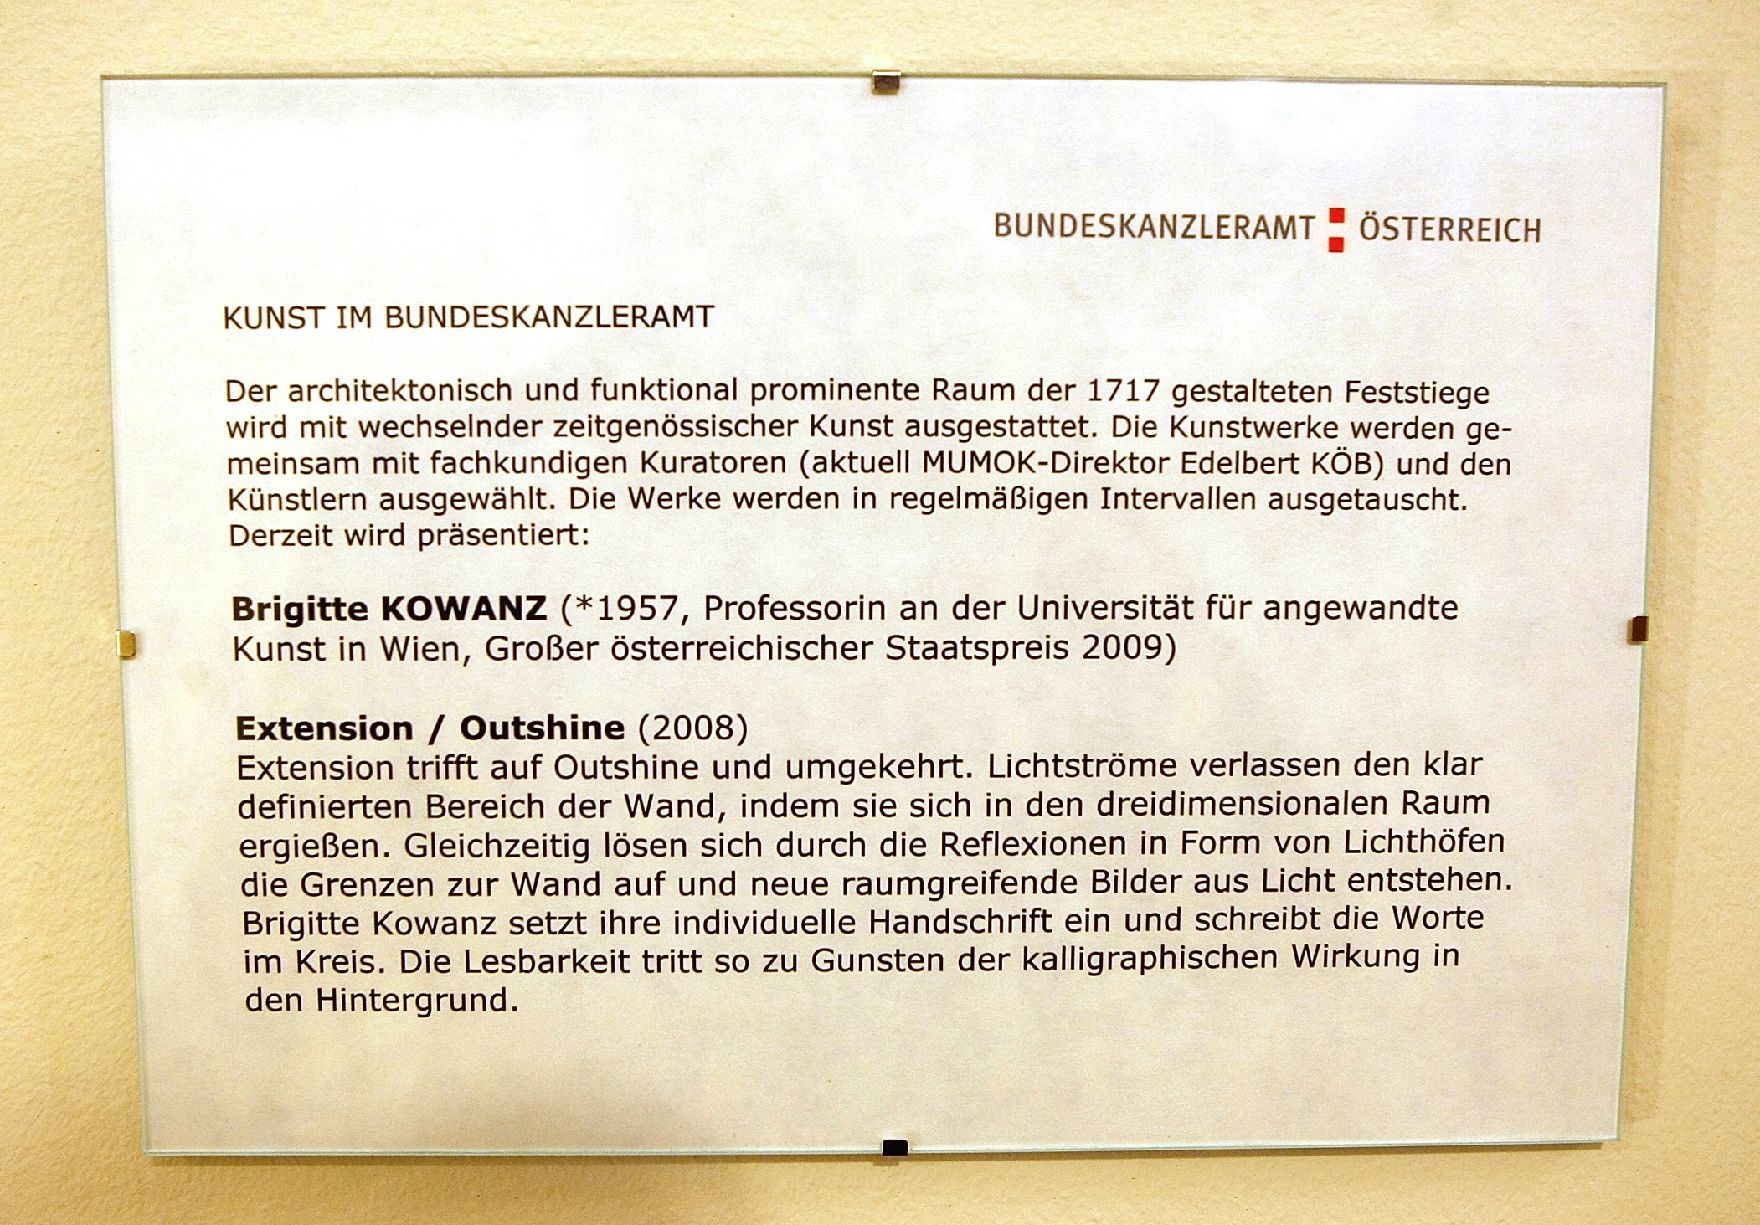 Infotafel zu dem Werk "Extension / Outshine" von Brigitte Kowanz ausgestellt auf der Feststiege im Bundeskanzleramt im Jahr 2010.